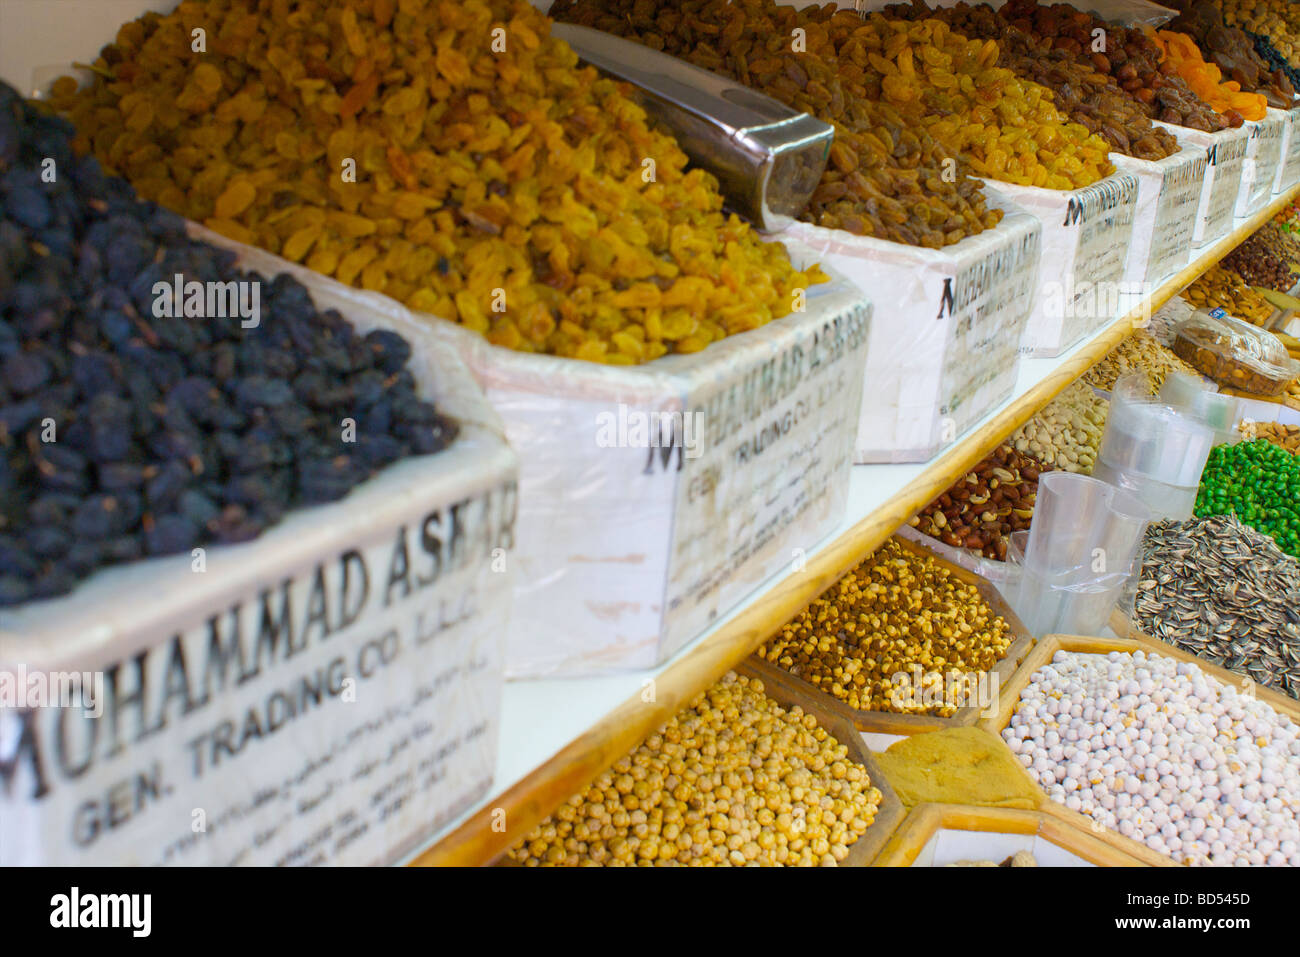 Los frutos secos, los cereales y la muestra en una tienda de especias en Deira, Dubai, Emiratos Árabes Unidos (EAU) Foto de stock